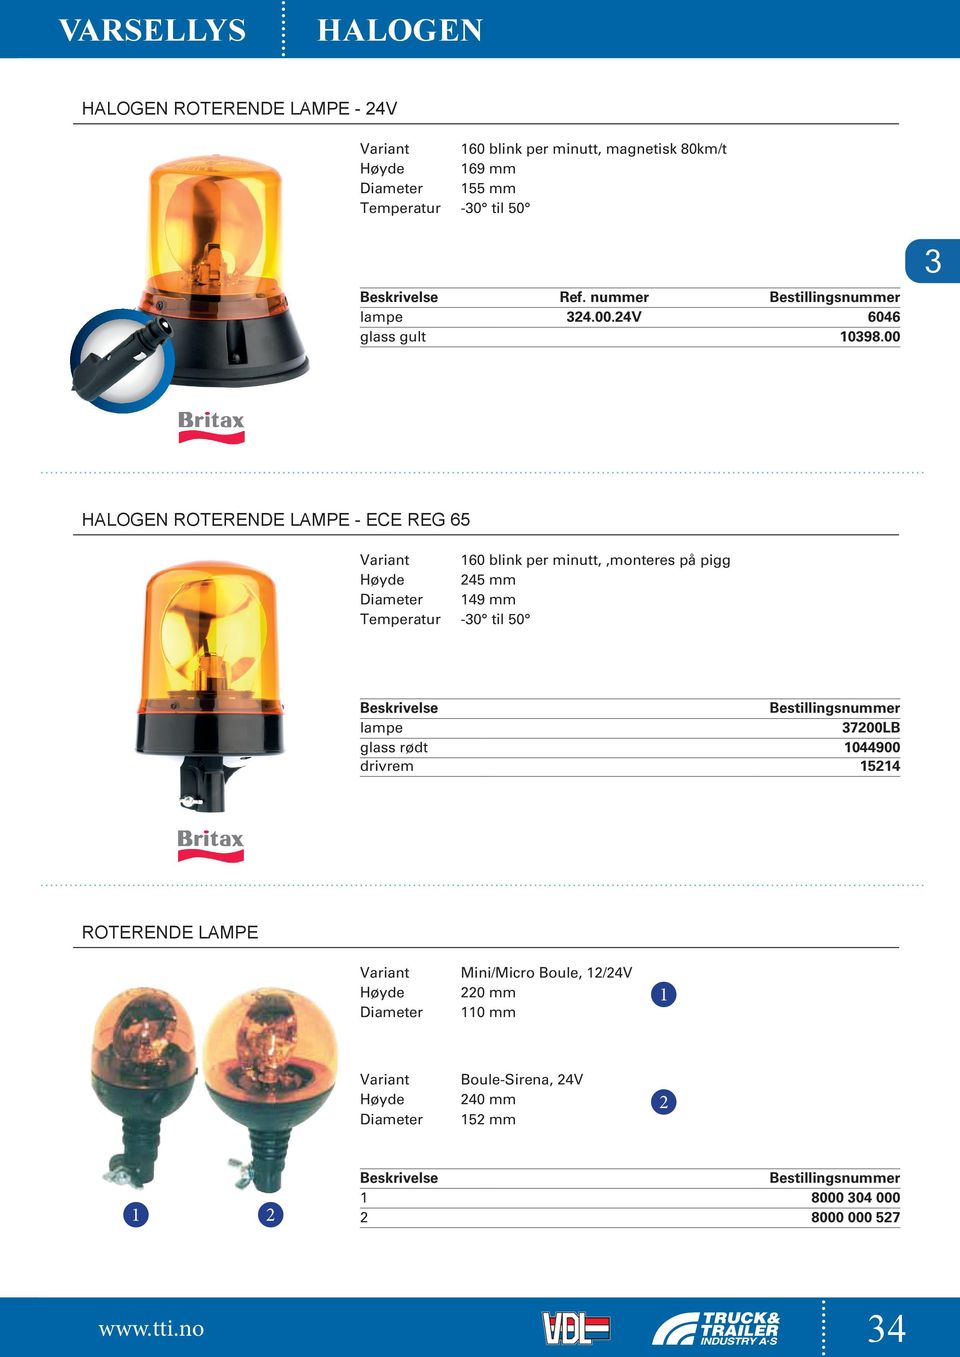 00 HALOGEN ROTERENDE LAMPE - ECE REG 65 160 blink per minutt,,monteres på pigg 245 mm 149 mm lampe